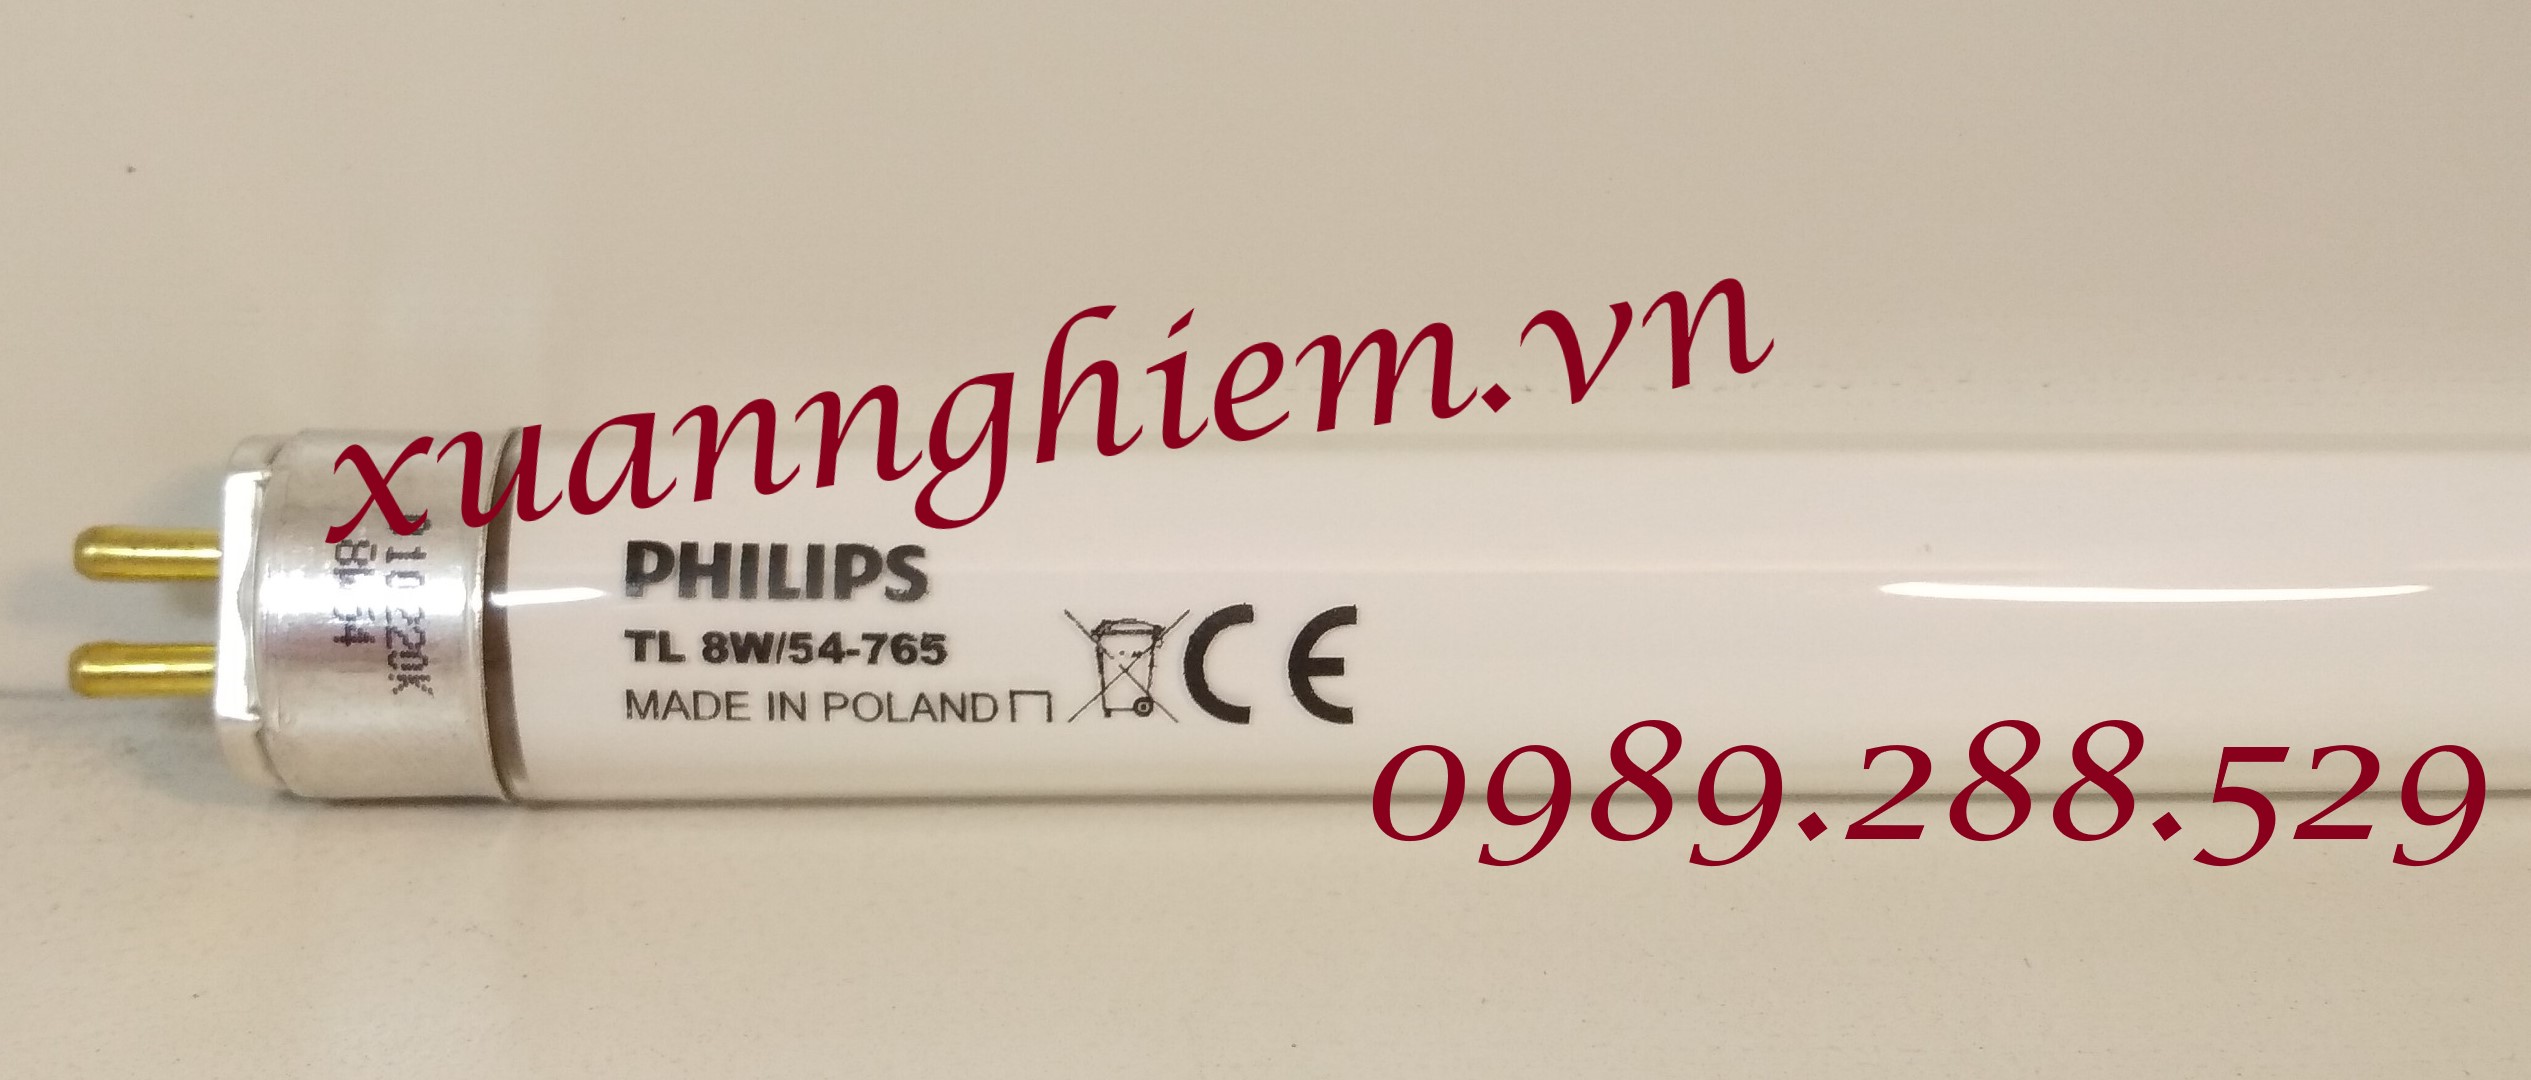 Bóng đèn Philips TL Mini 8W/54-765